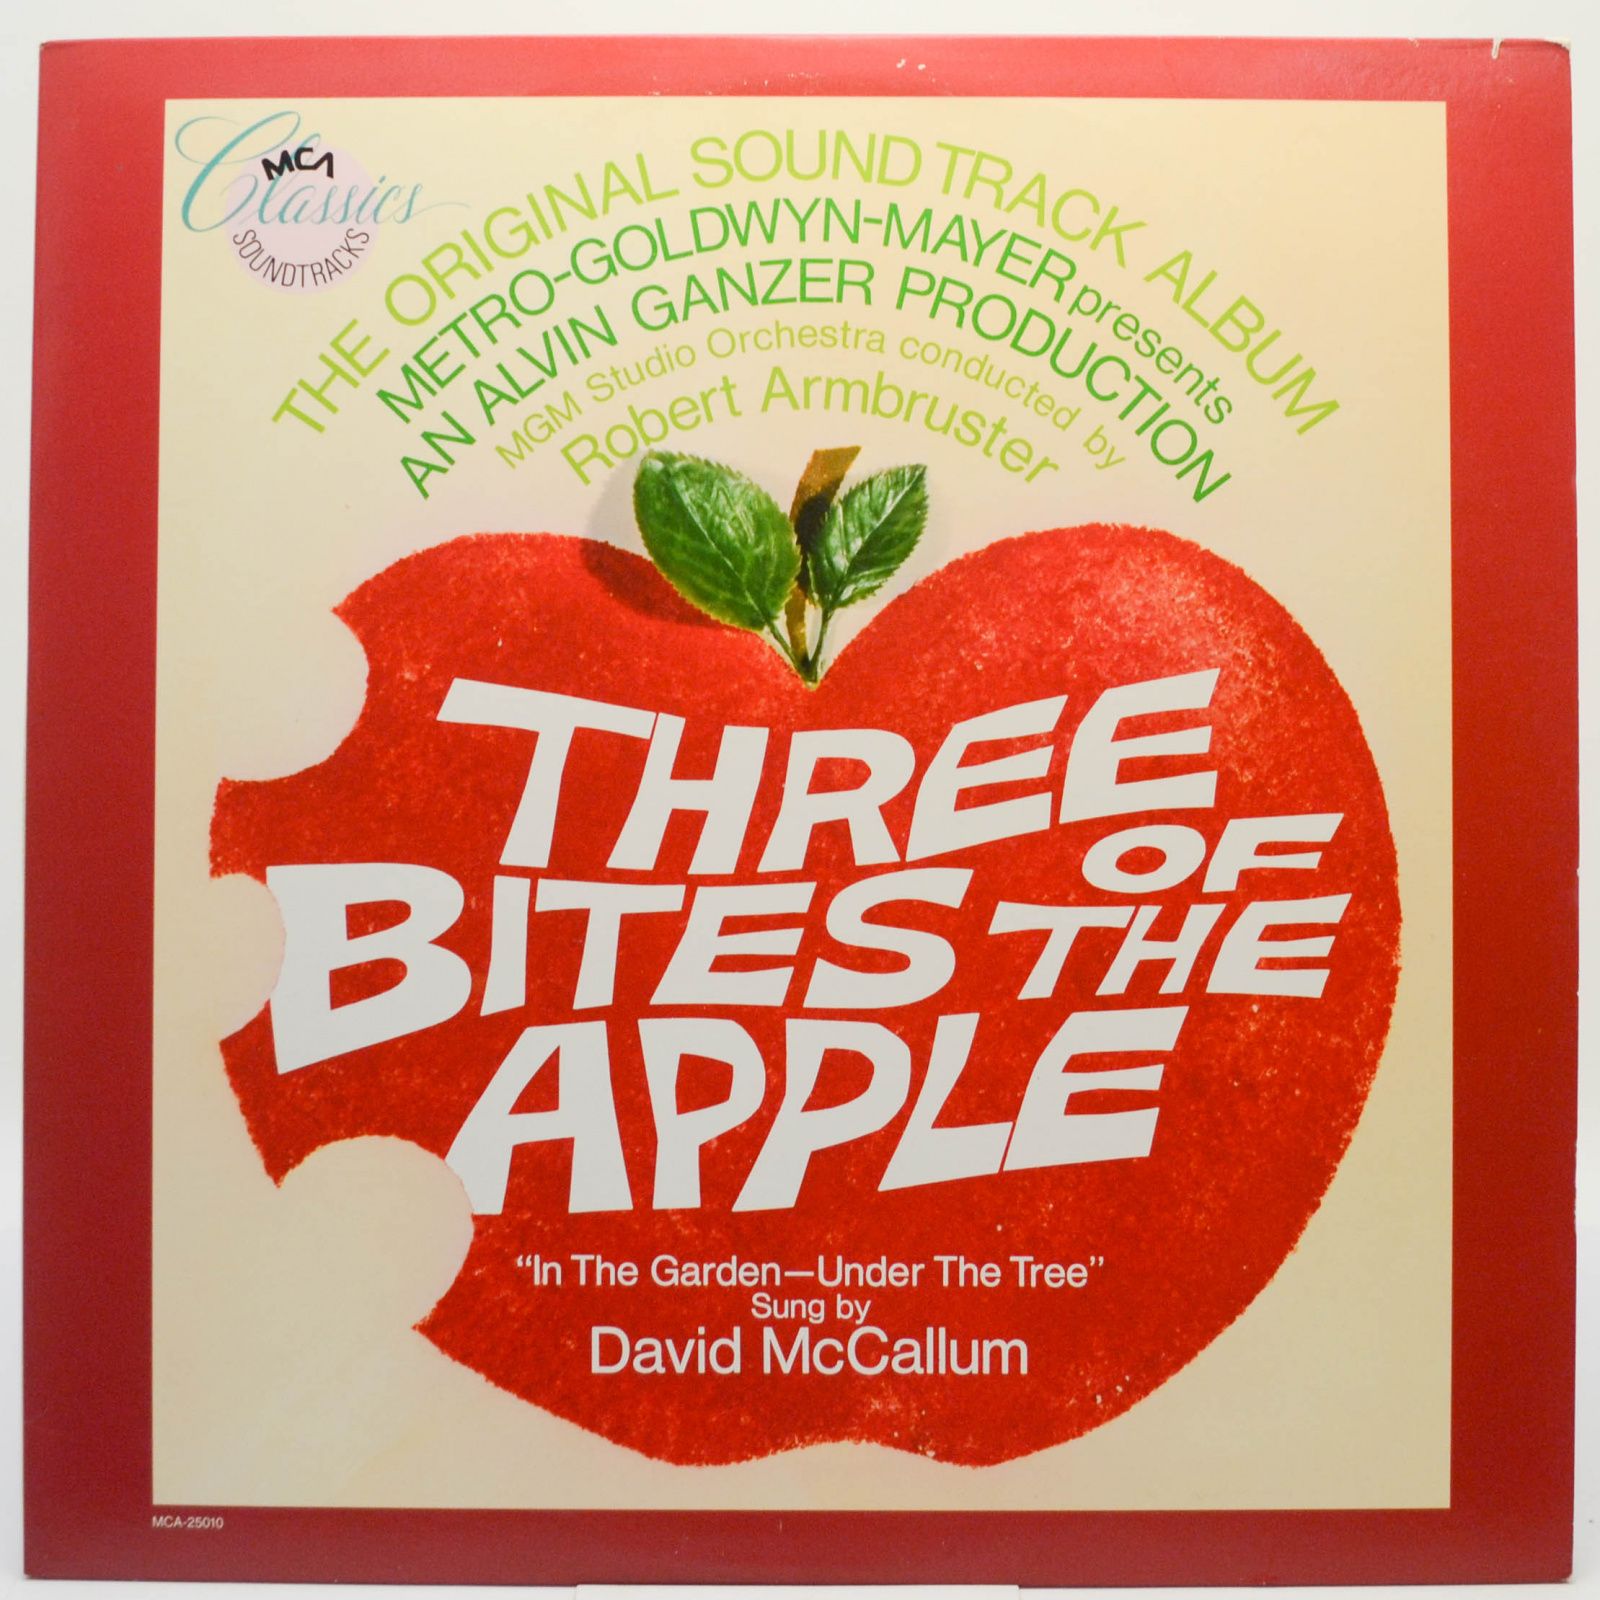 Three Bites Of The Apple (The Original Sound Track Album), 1986